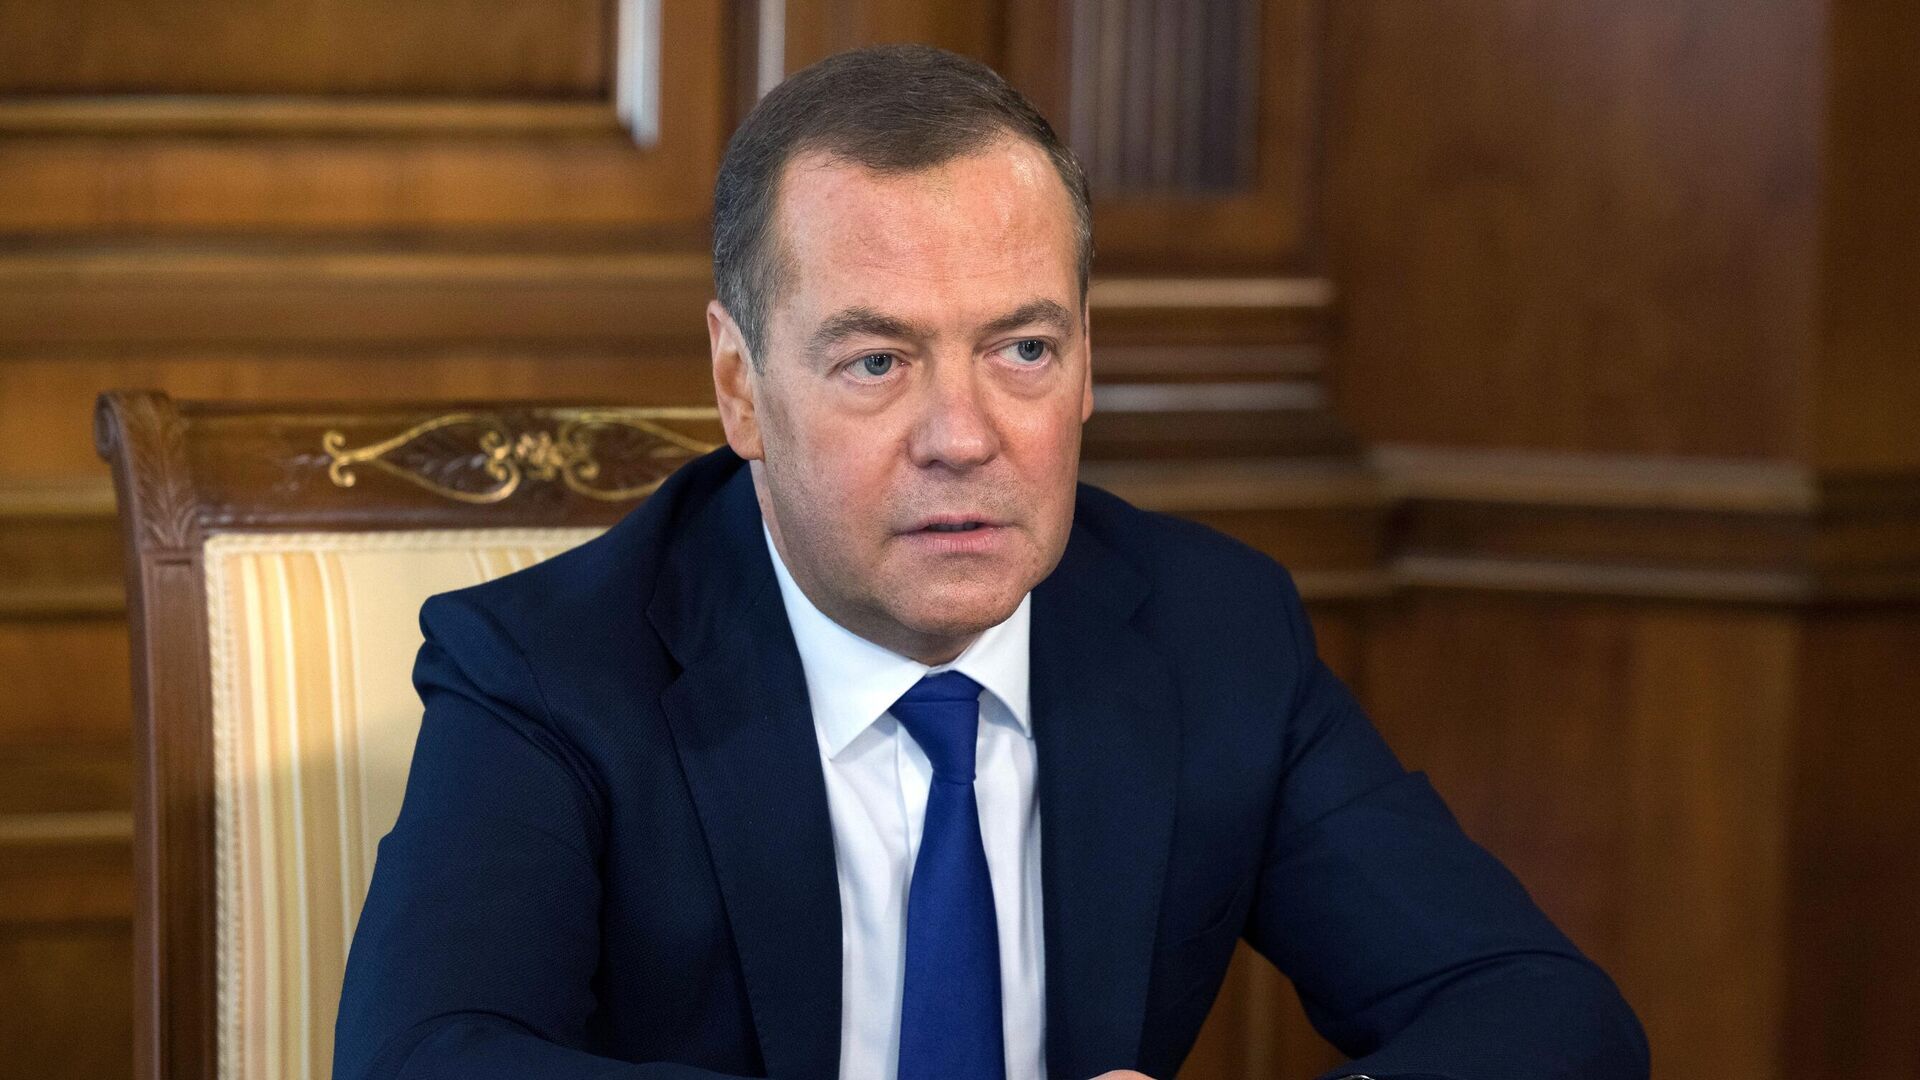 ОПК успешно прошел проверку спецоперацией, заявил Медведев